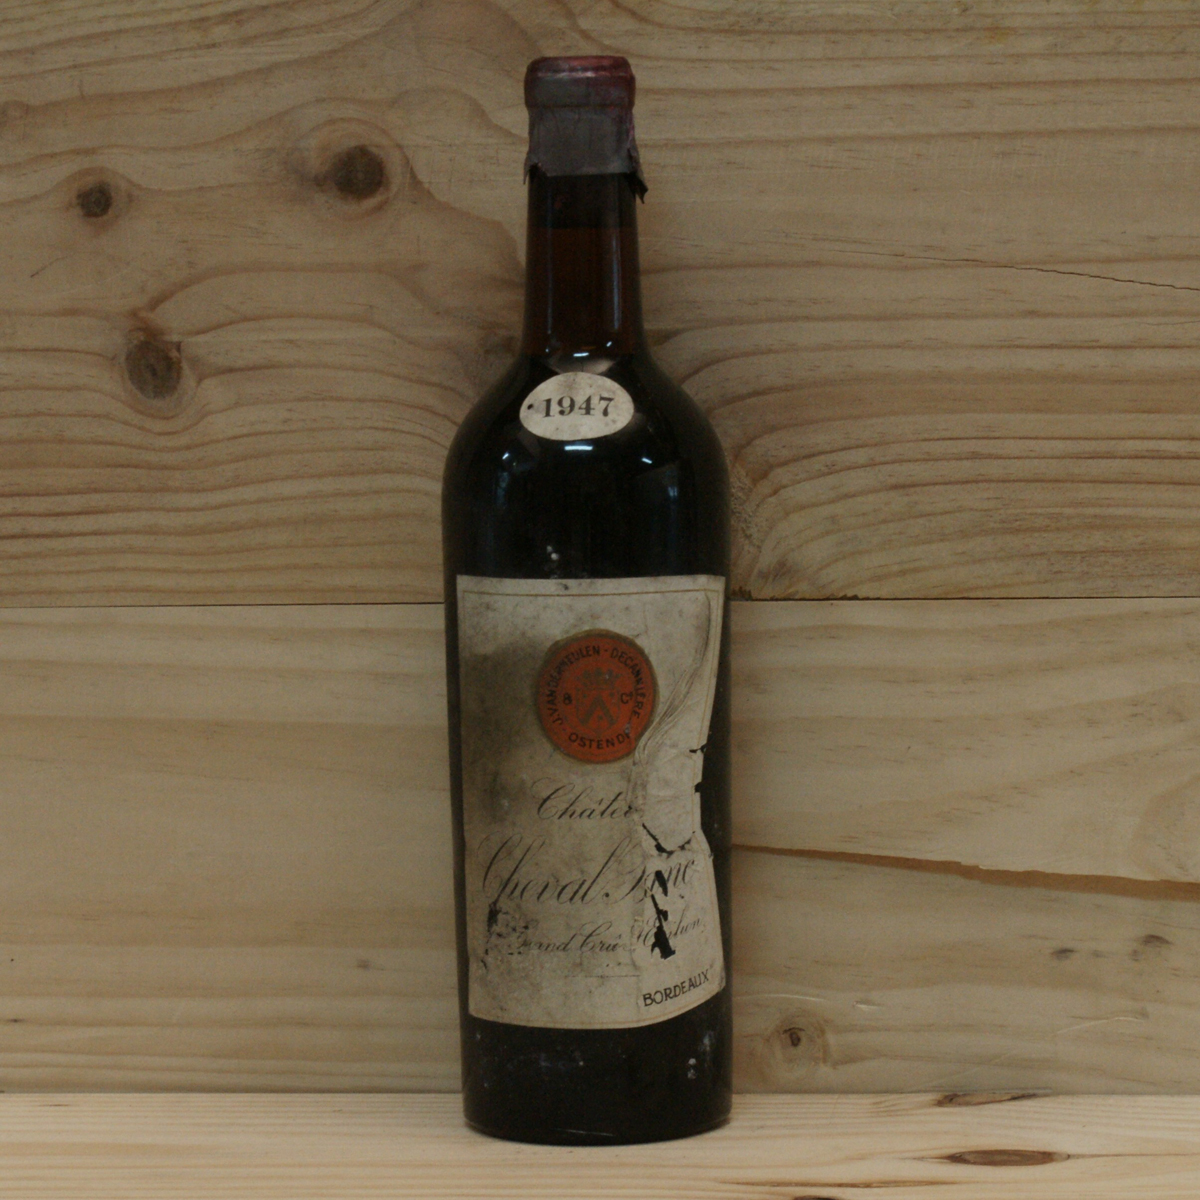 Цена самого дорогого вина. Вино Шеваль Блан 1947. Шато Шеваль Блан 1947 года. Cheval Blanc 1947 года. Шато Шеваль Блан 1947 года (1947 Château cheval Blanc) – 304 375.